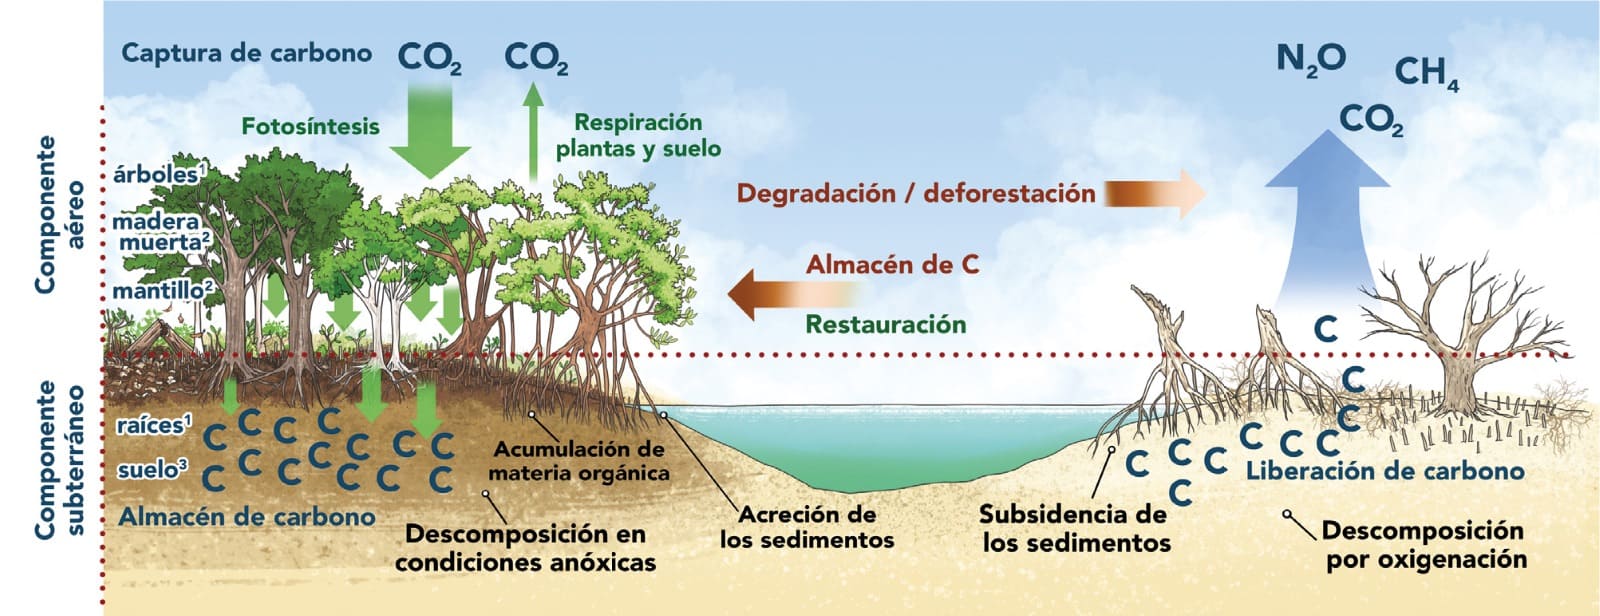 Componentes en el almacén y captura de CO2 en el manglar. 1. Biomasa viva, 2. Necromasa y 3. Suelo. Esquematización de los flujos de carbono en un manglar conservado y degradado. Definiciones de los componentes del IPCC (2003).